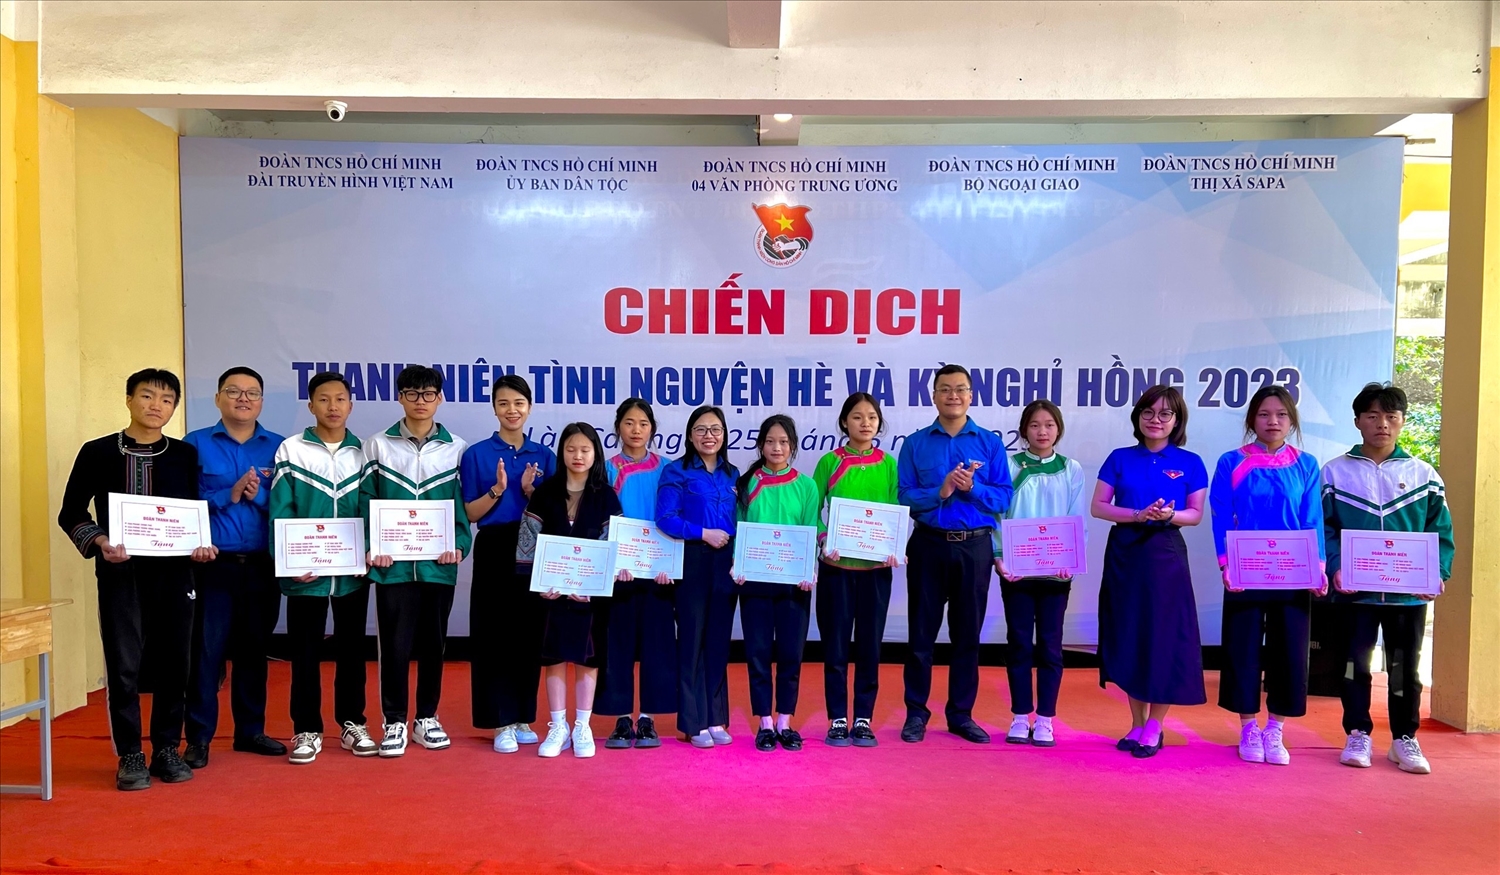 Đoàn công tác trao học bổng cho các em học sinh trường Phổ thông dân tộc Nội trú Trung học cơ sở và Trung học phổ thông thị xã Sapa, tỉnh Lào Cai